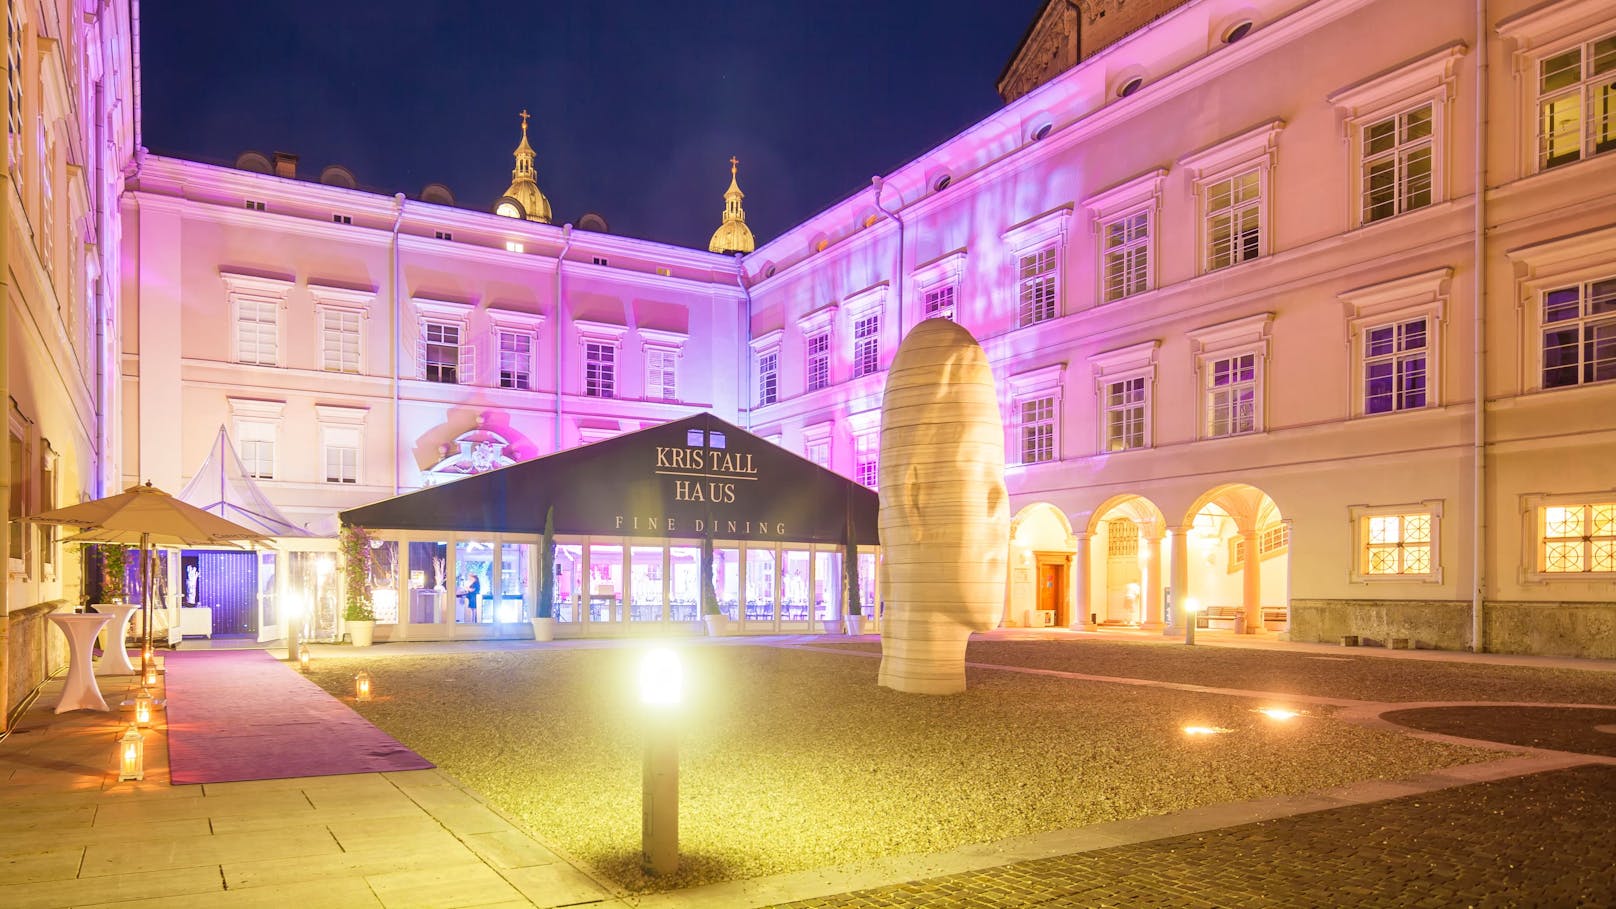 Der Toskanatrakt der Salzburger Residenz beherbergt die Universität Salzburg (Rechtswissenschaften).